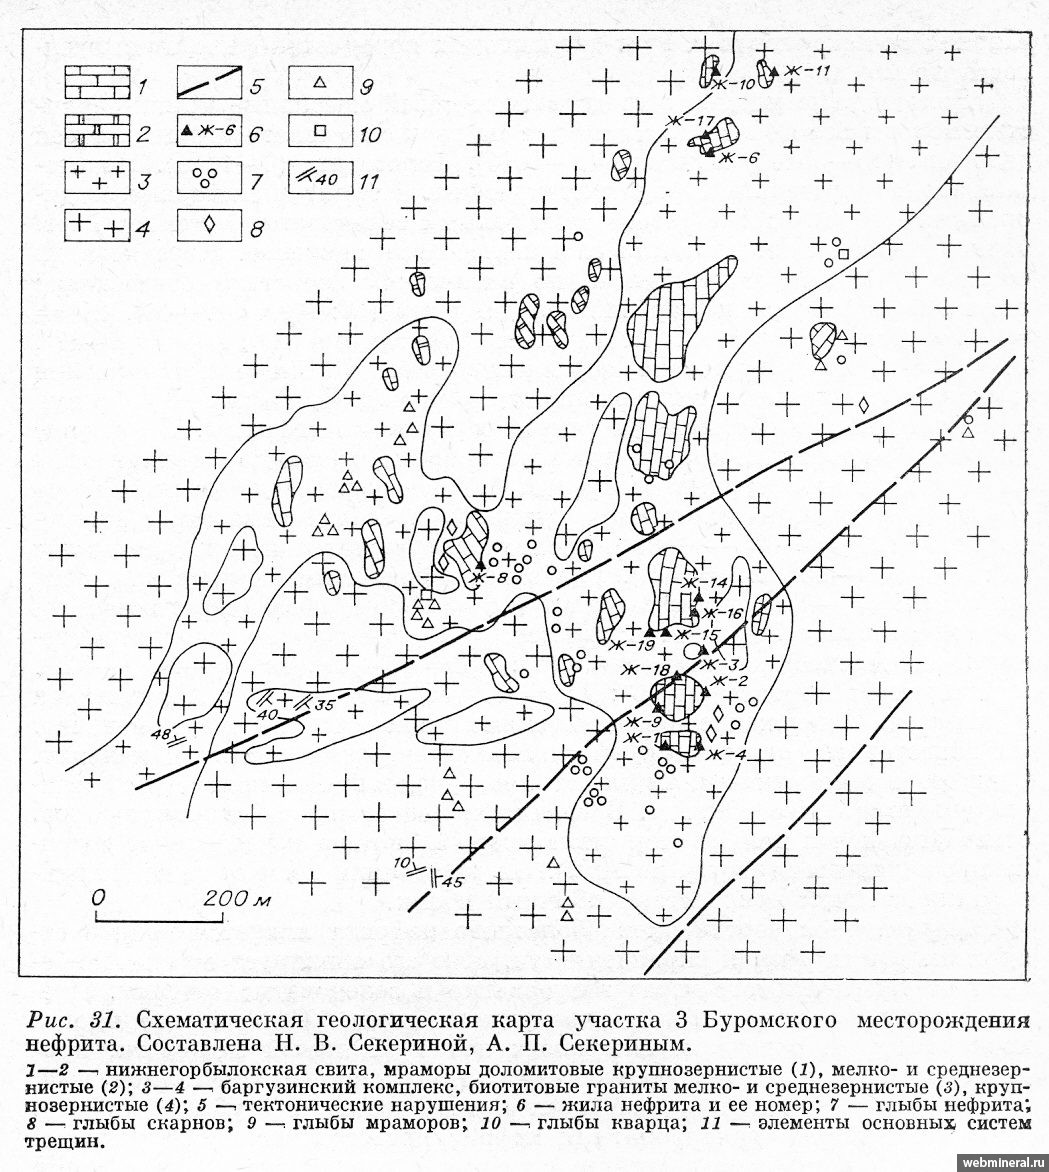 Карта участка №3 Буромского месторождения. Минералы и месторождения. webmineral.ru